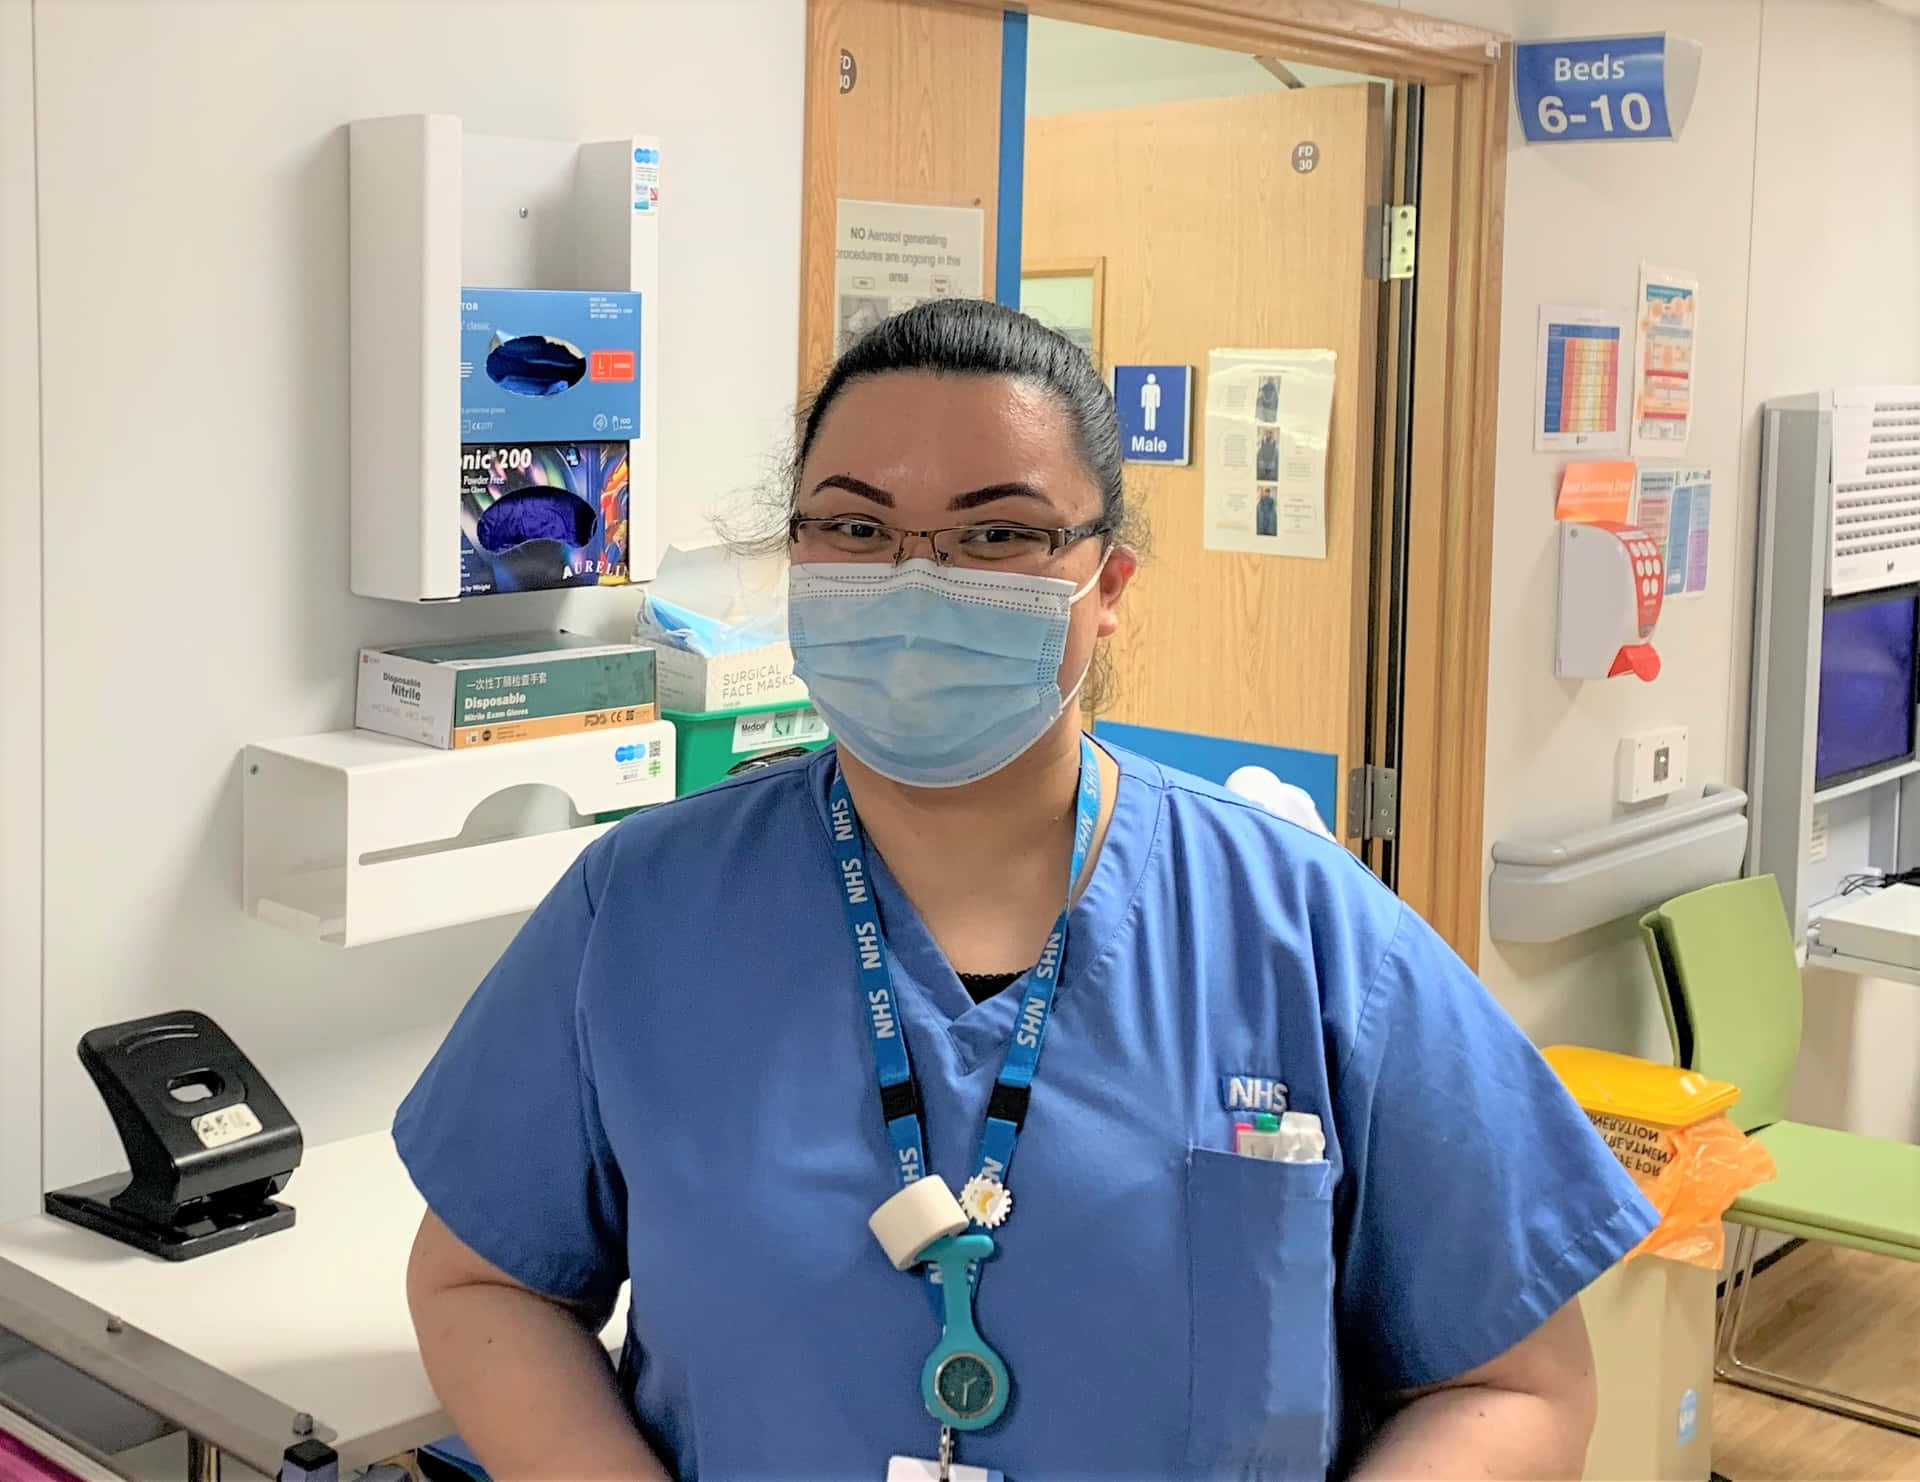 Einekrankenschwester Trägt Eine Maske Und Steht In Einem Krankenzimmer.